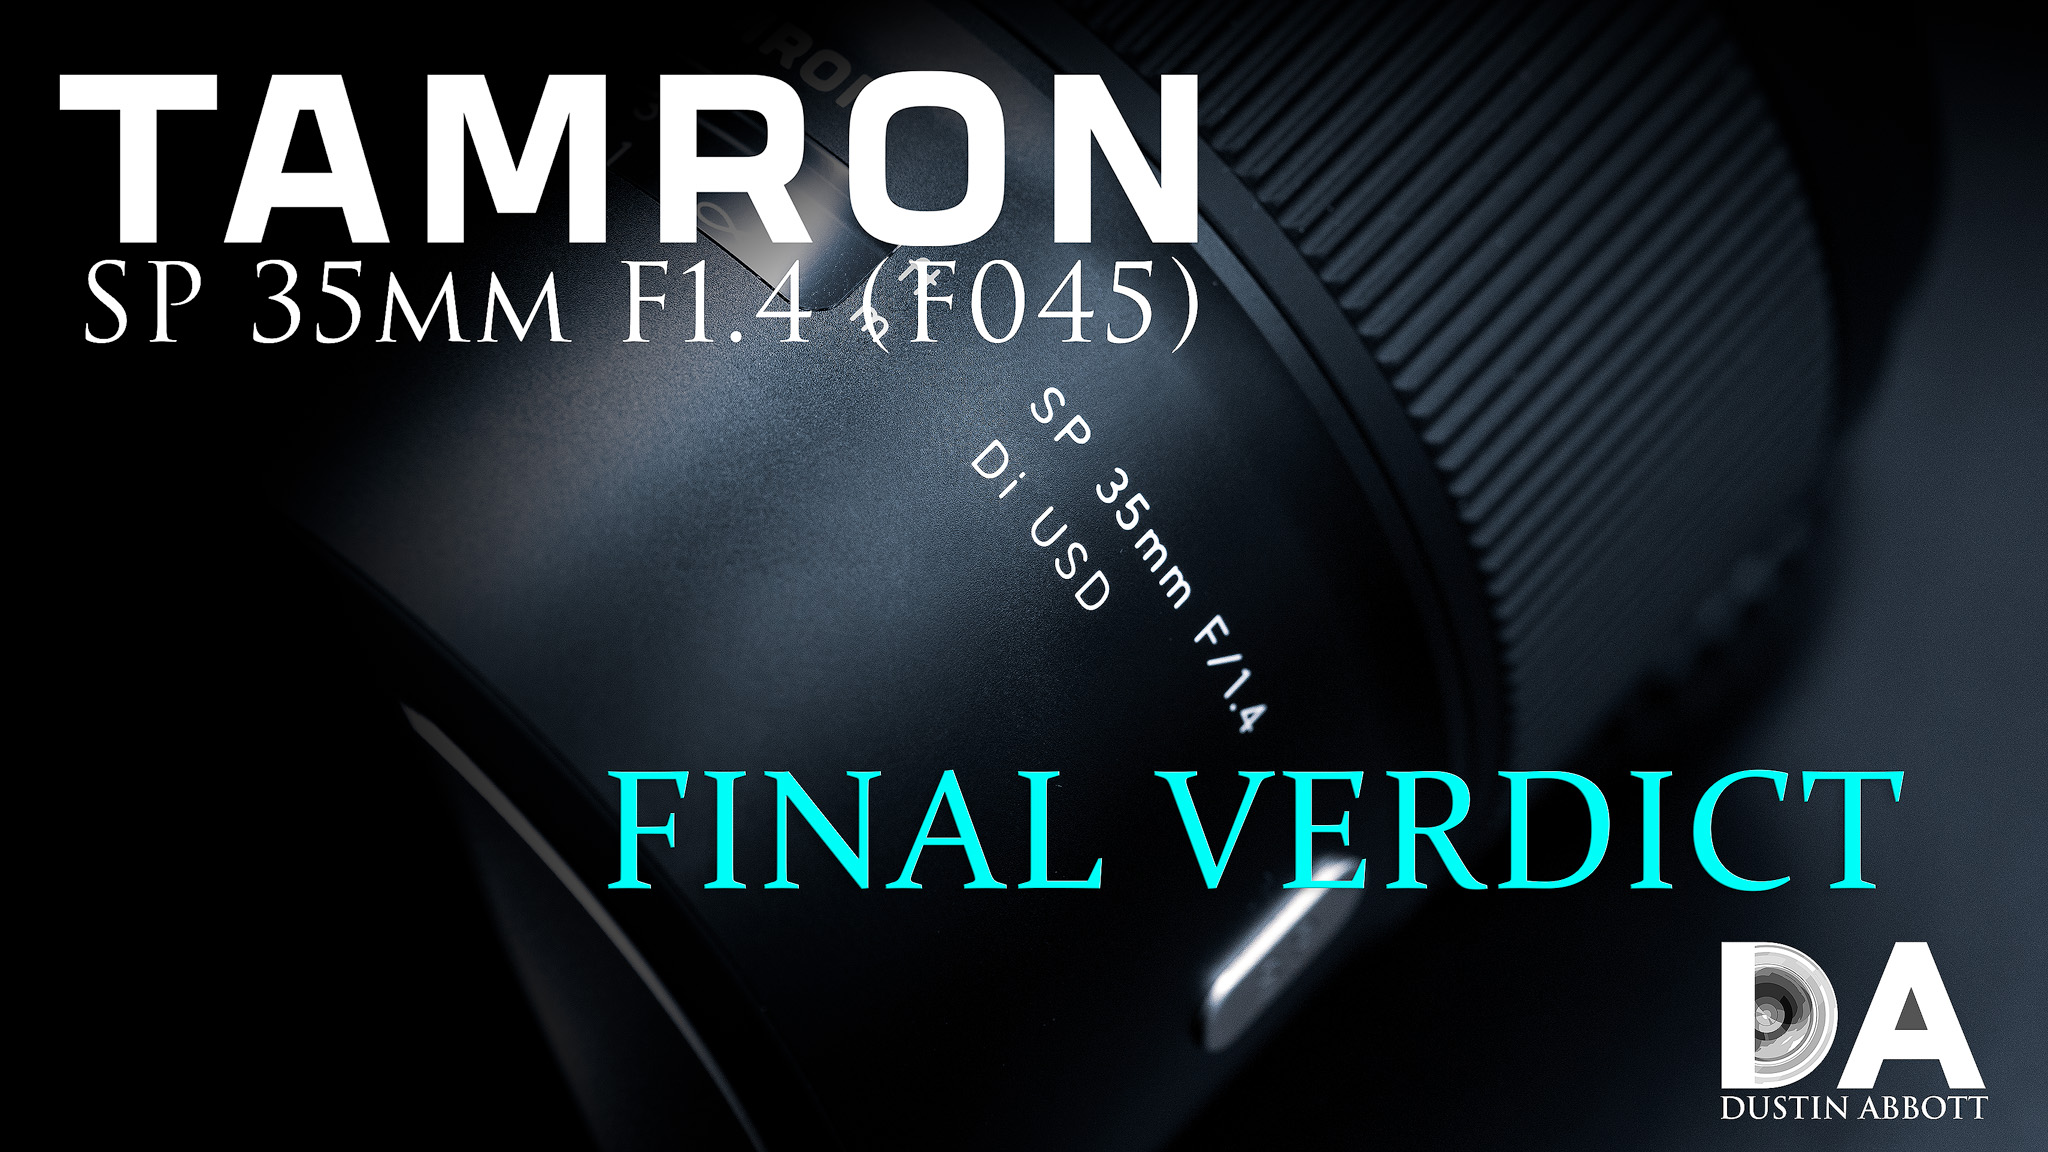 Tamron SP 35mm F1.4 USD (F045) Review - DustinAbbott.net